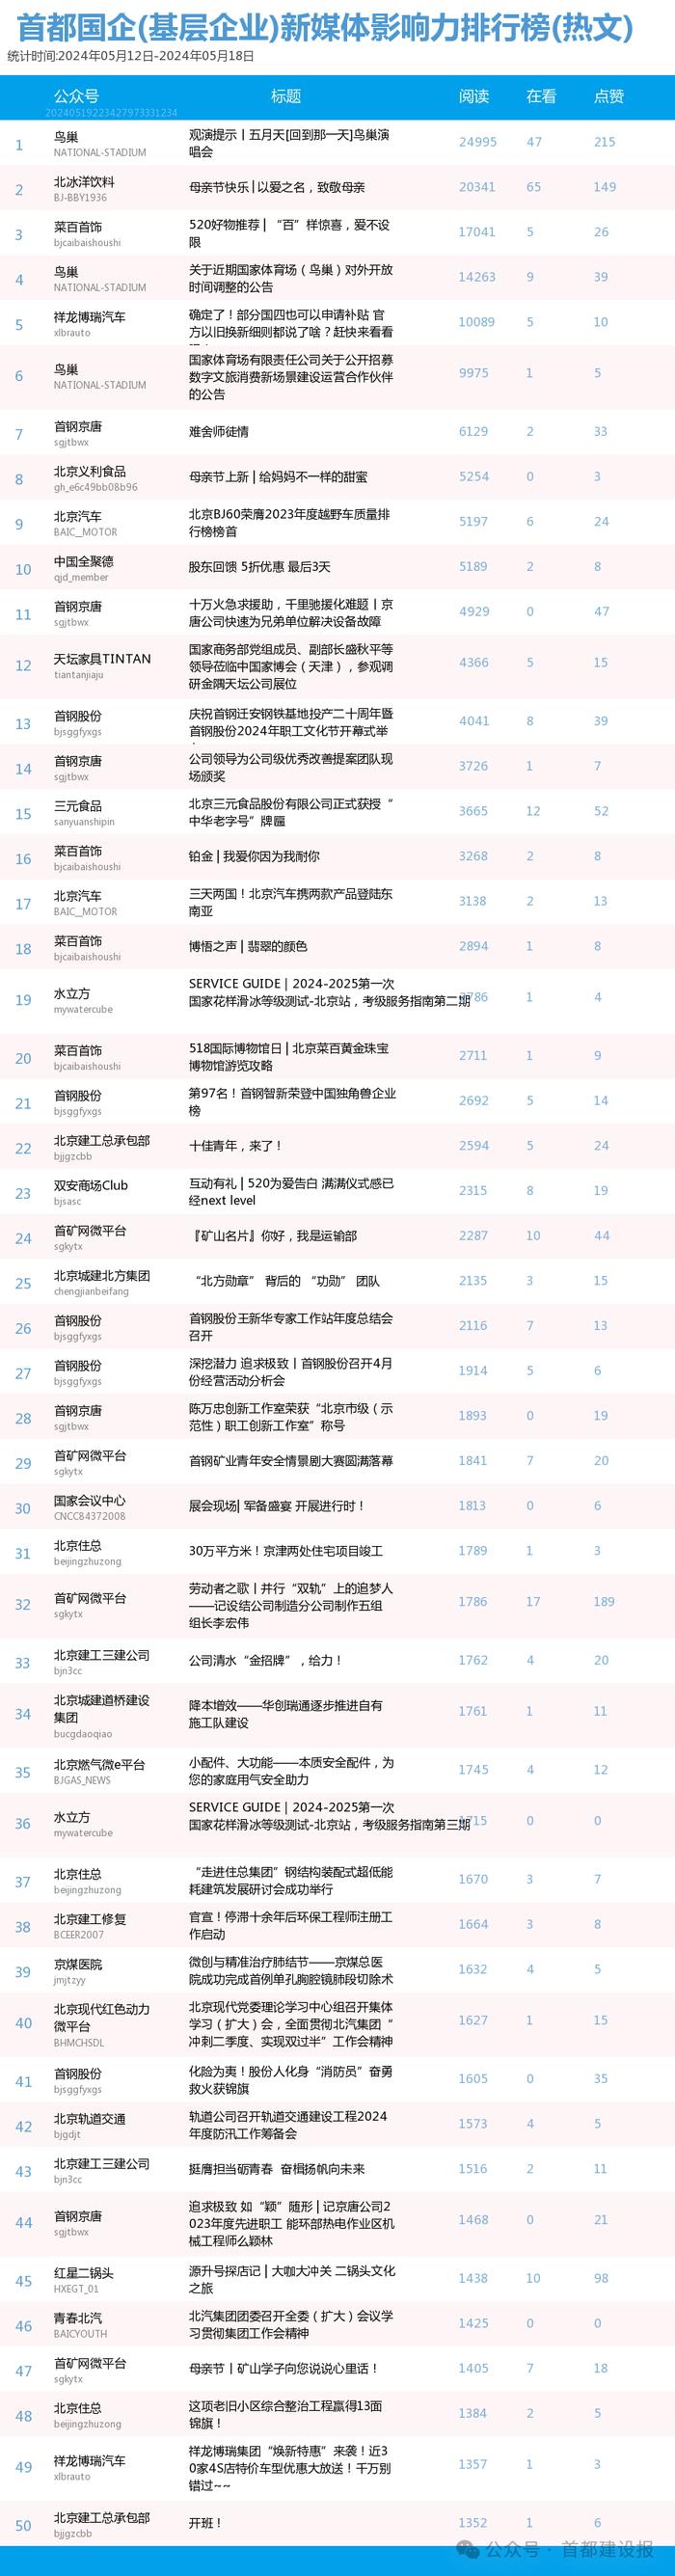 【北京国企新媒体影响力排行榜】5月周榜(5.12-5.18)第408期